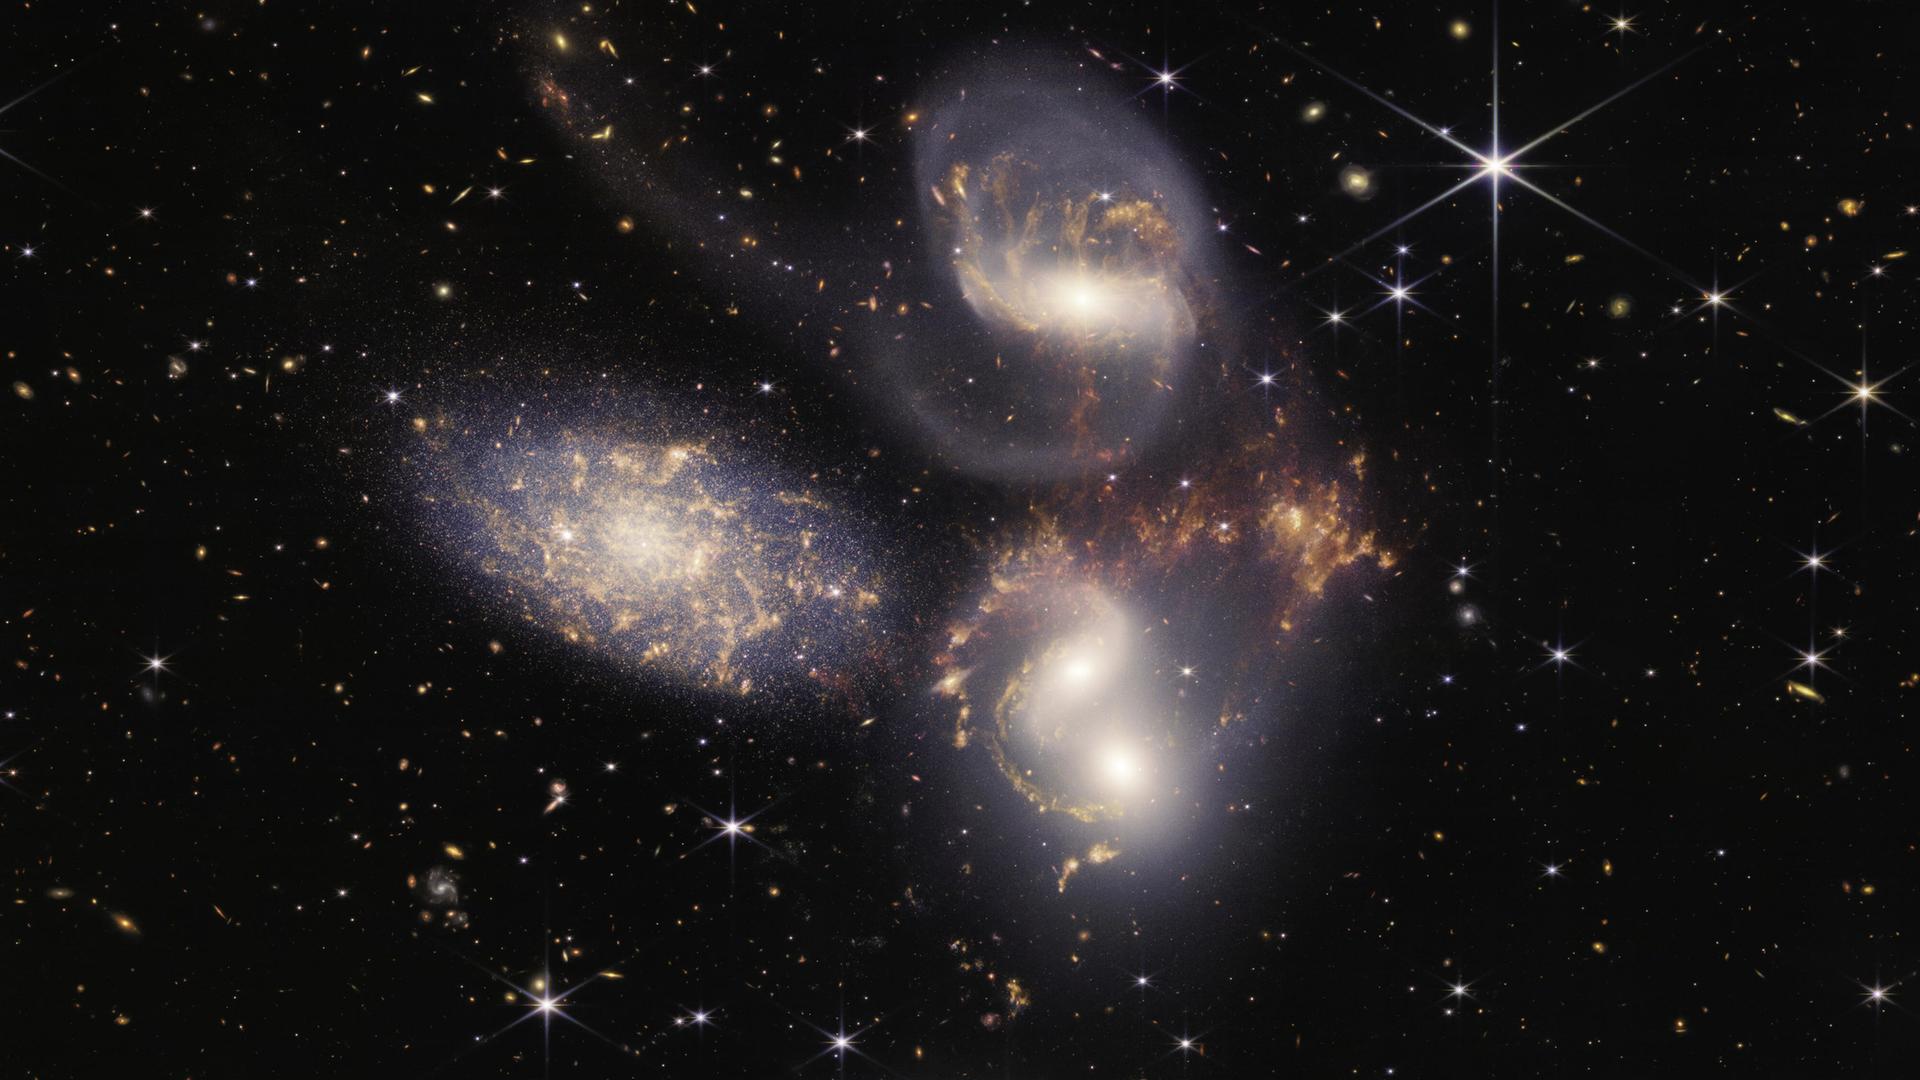 Das James-Webb-Weltraum-Teleskop zeigt einen tiefen Einblick ins Weltall. Einzelne Körper leuchten vor einem tiefen schwarzen Hintergrund.